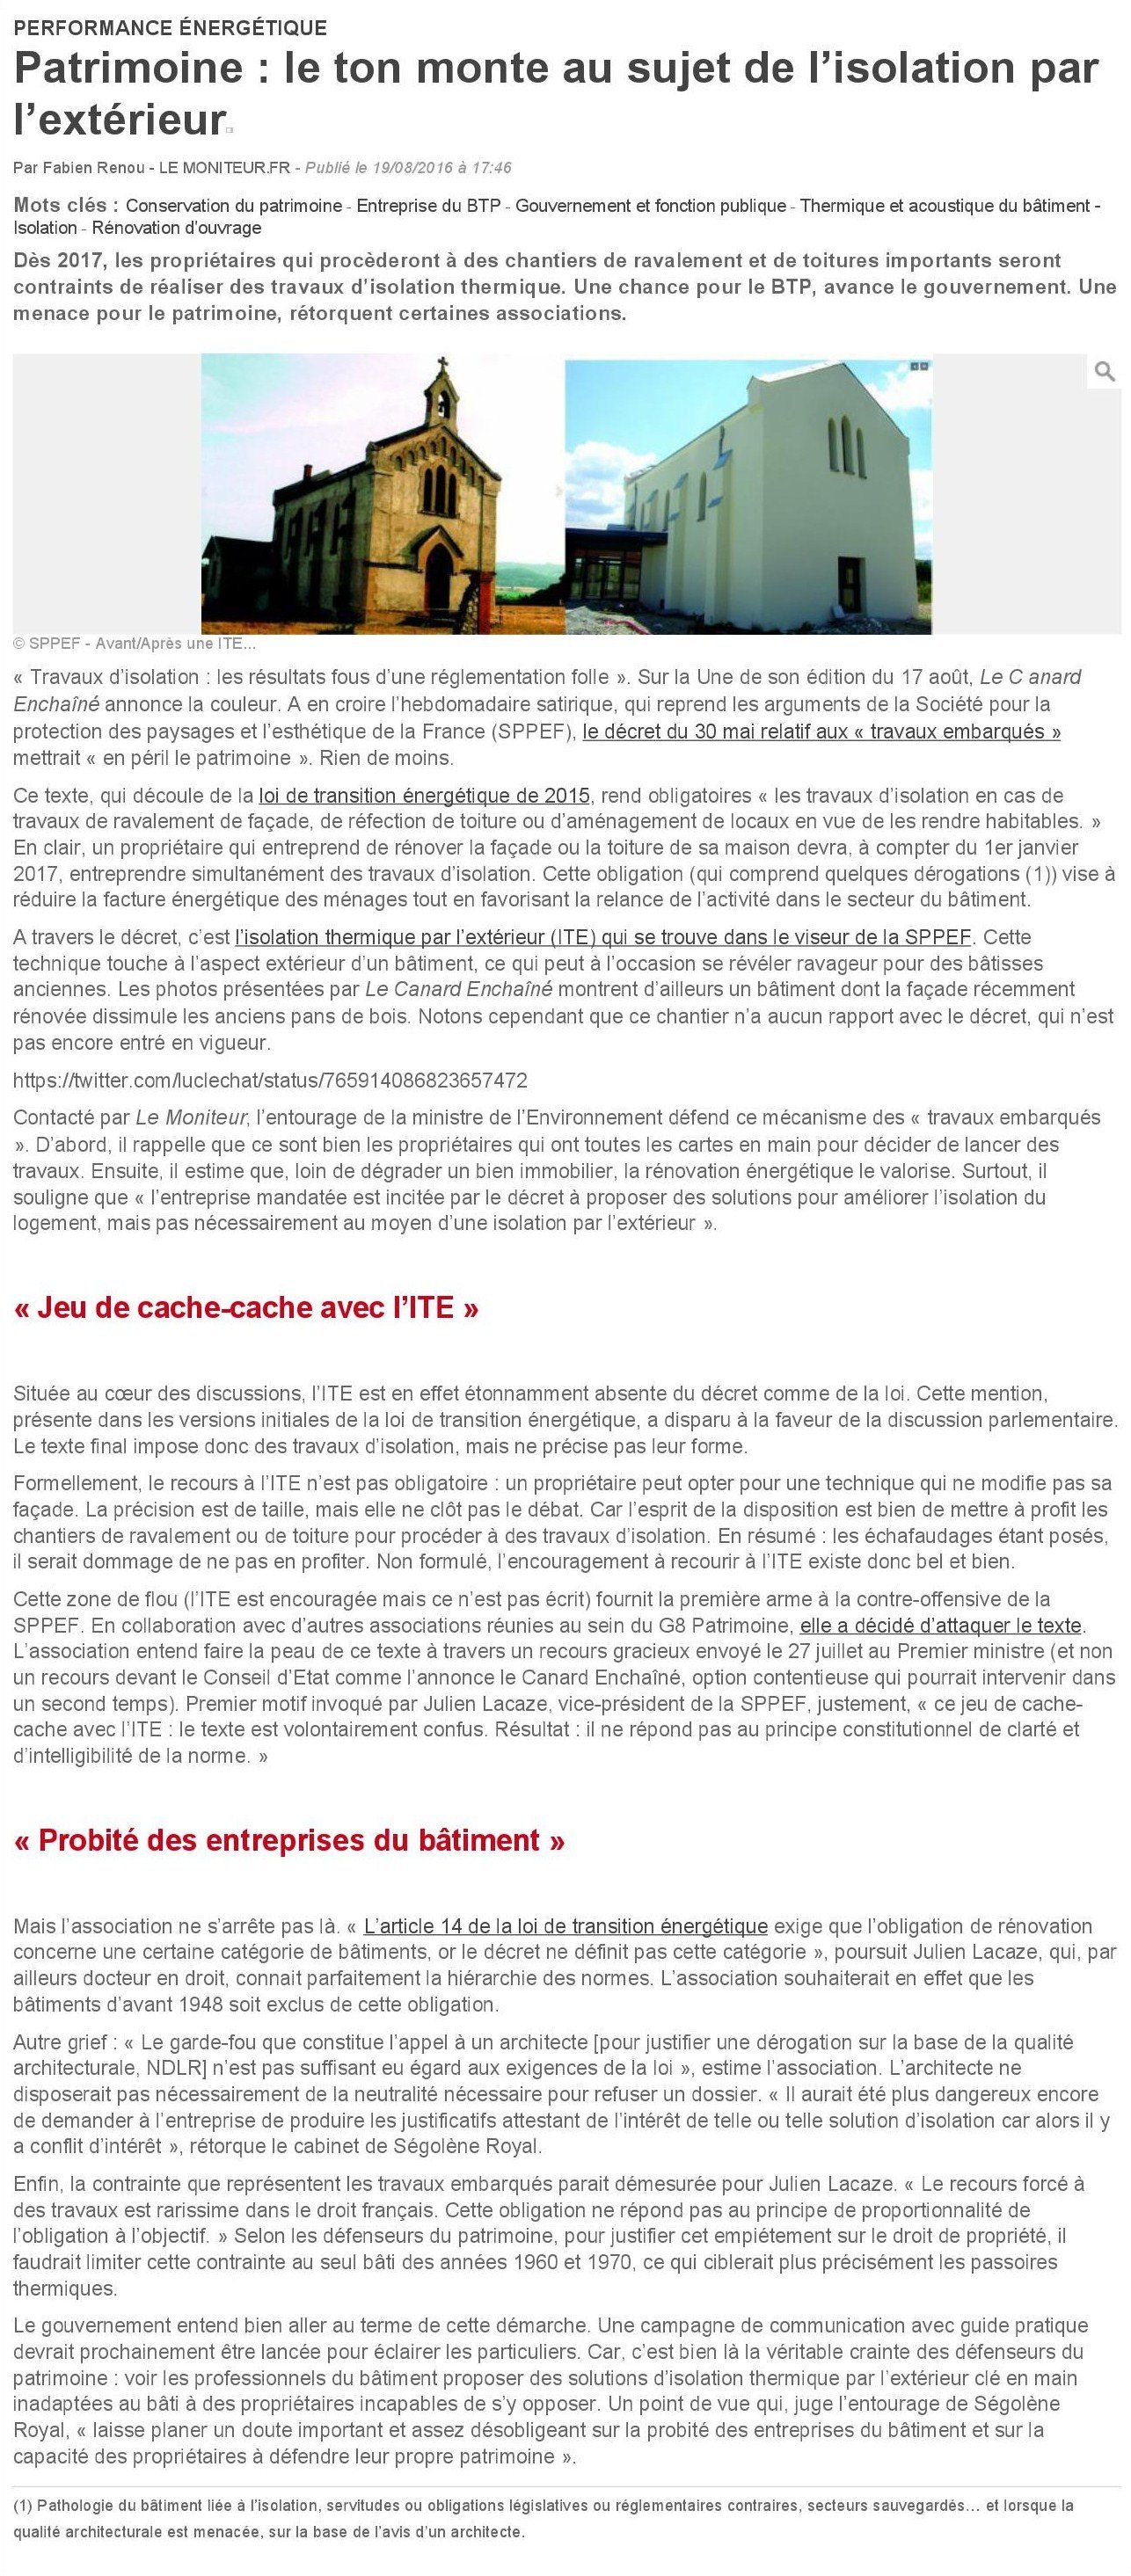 Article ITE LeMoniteur.fr